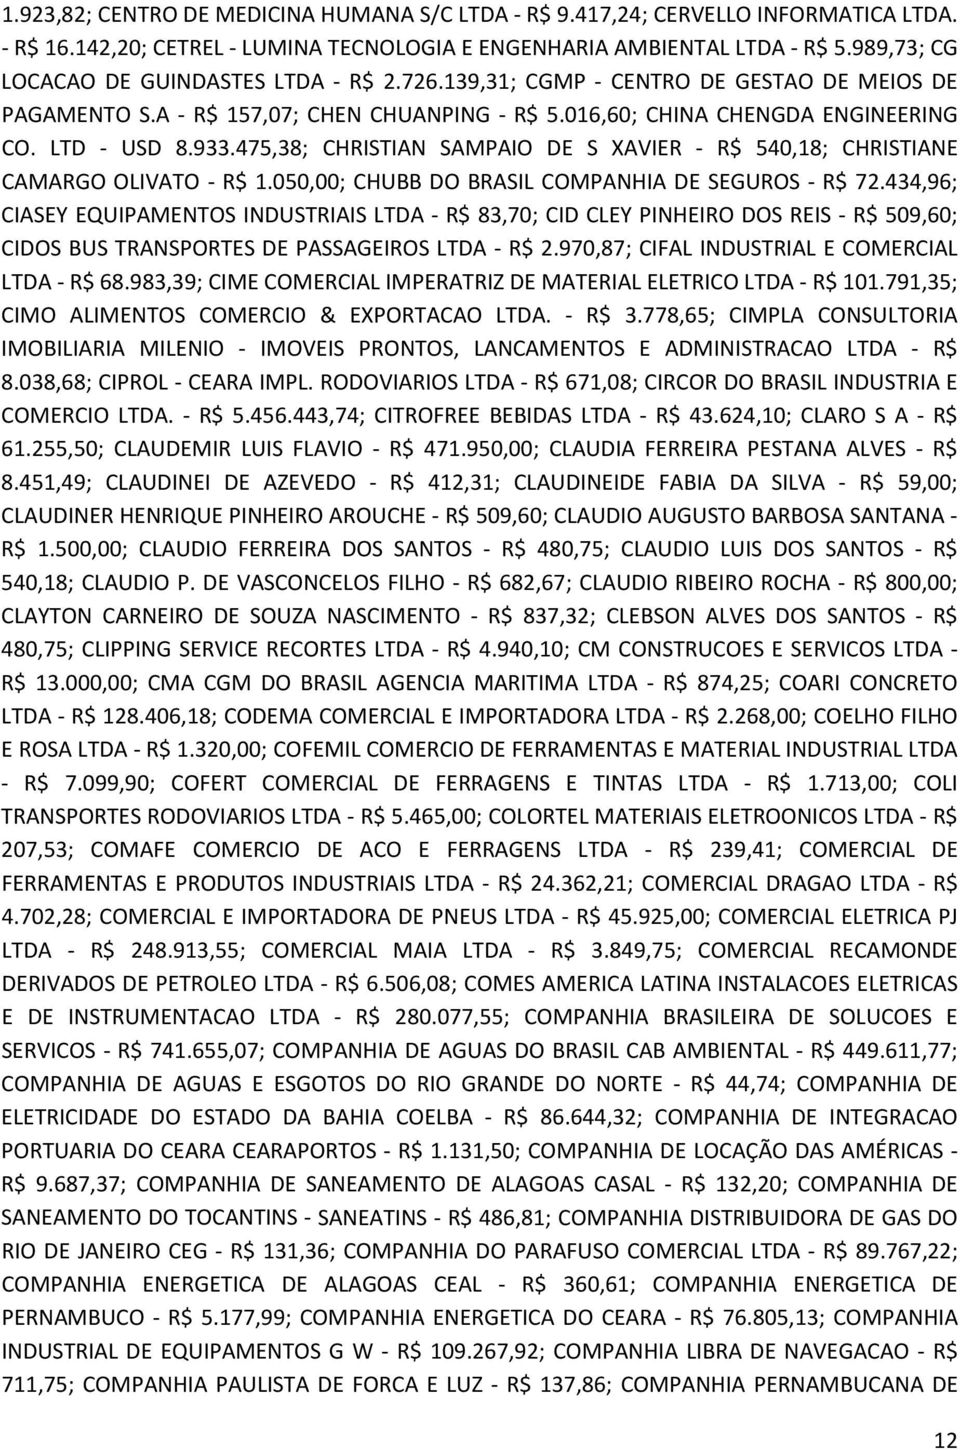 475,38; CHRISTIAN SAMPAIO DE S XAVIER - R$ 540,18; CHRISTIANE CAMARGO OLIVATO - R$ 1.050,00; CHUBB DO BRASIL COMPANHIA DE SEGUROS - R$ 72.